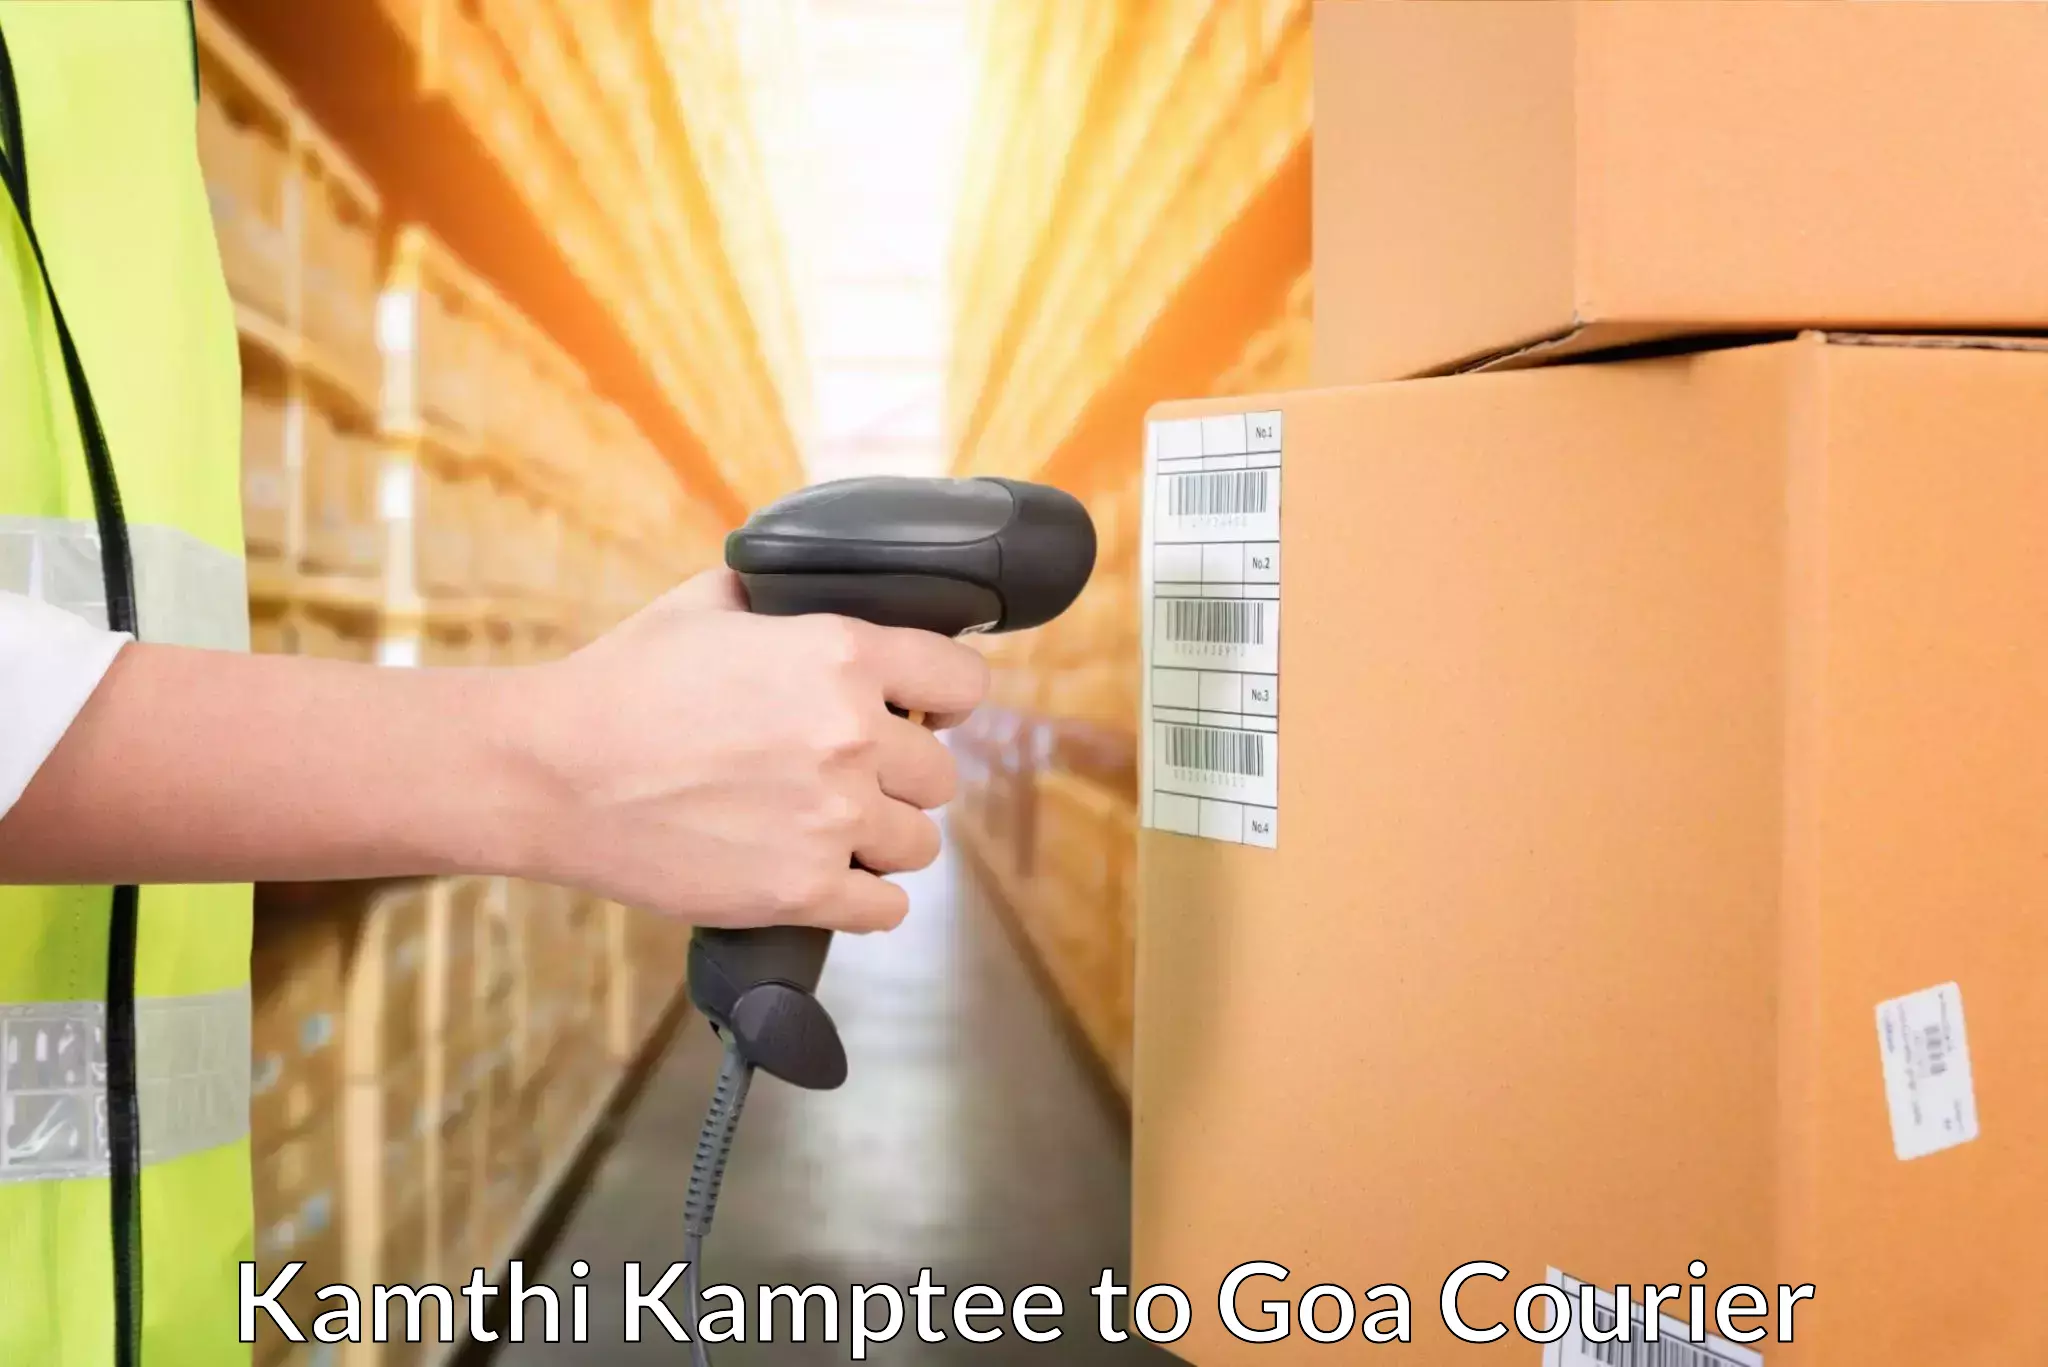 24-hour courier service Kamthi Kamptee to Sanvordem